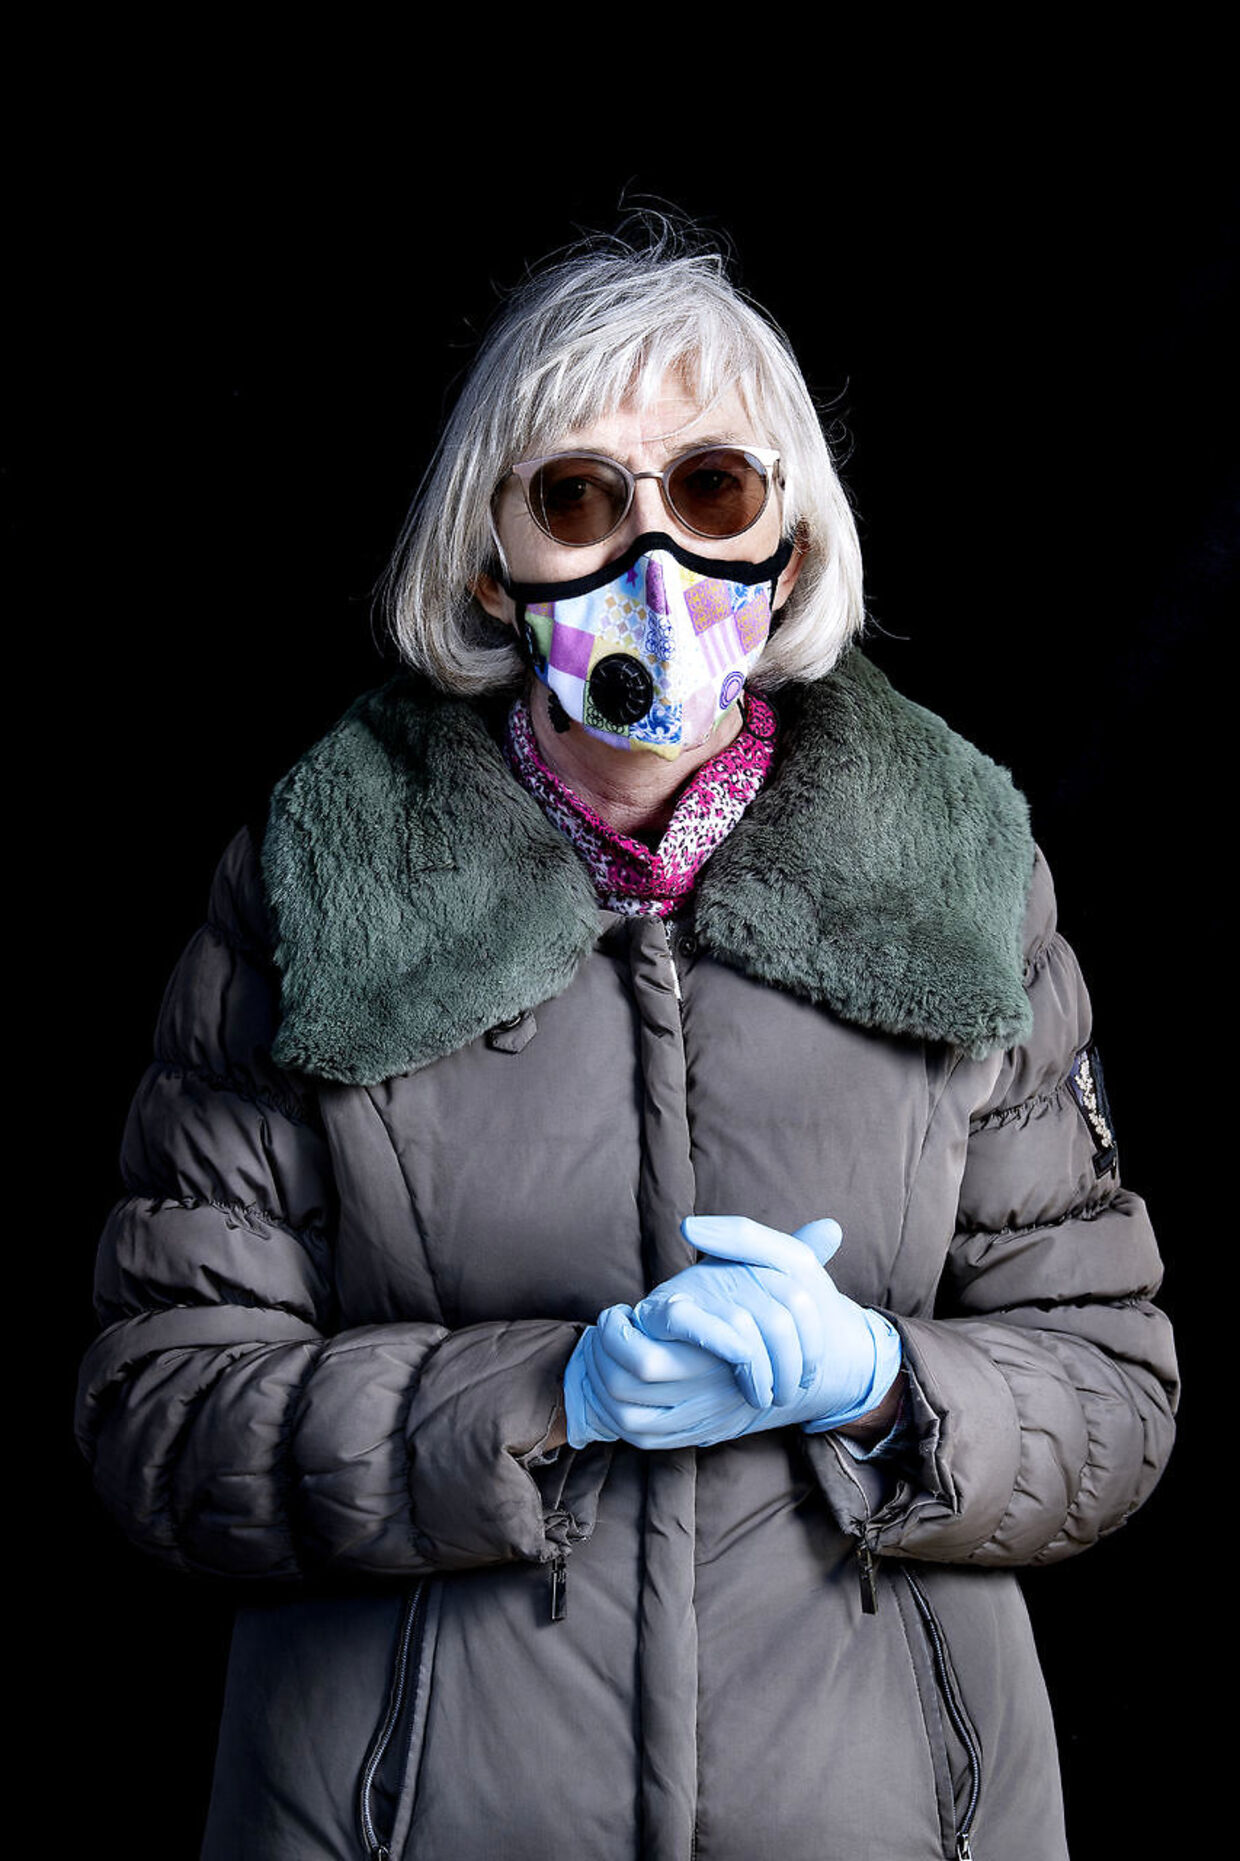 Den pensionerede læge Lis Smedegaard Andersen har nedsat immunforsvar. Hun bestilte sin maske længe før, det blev en mangelvare.